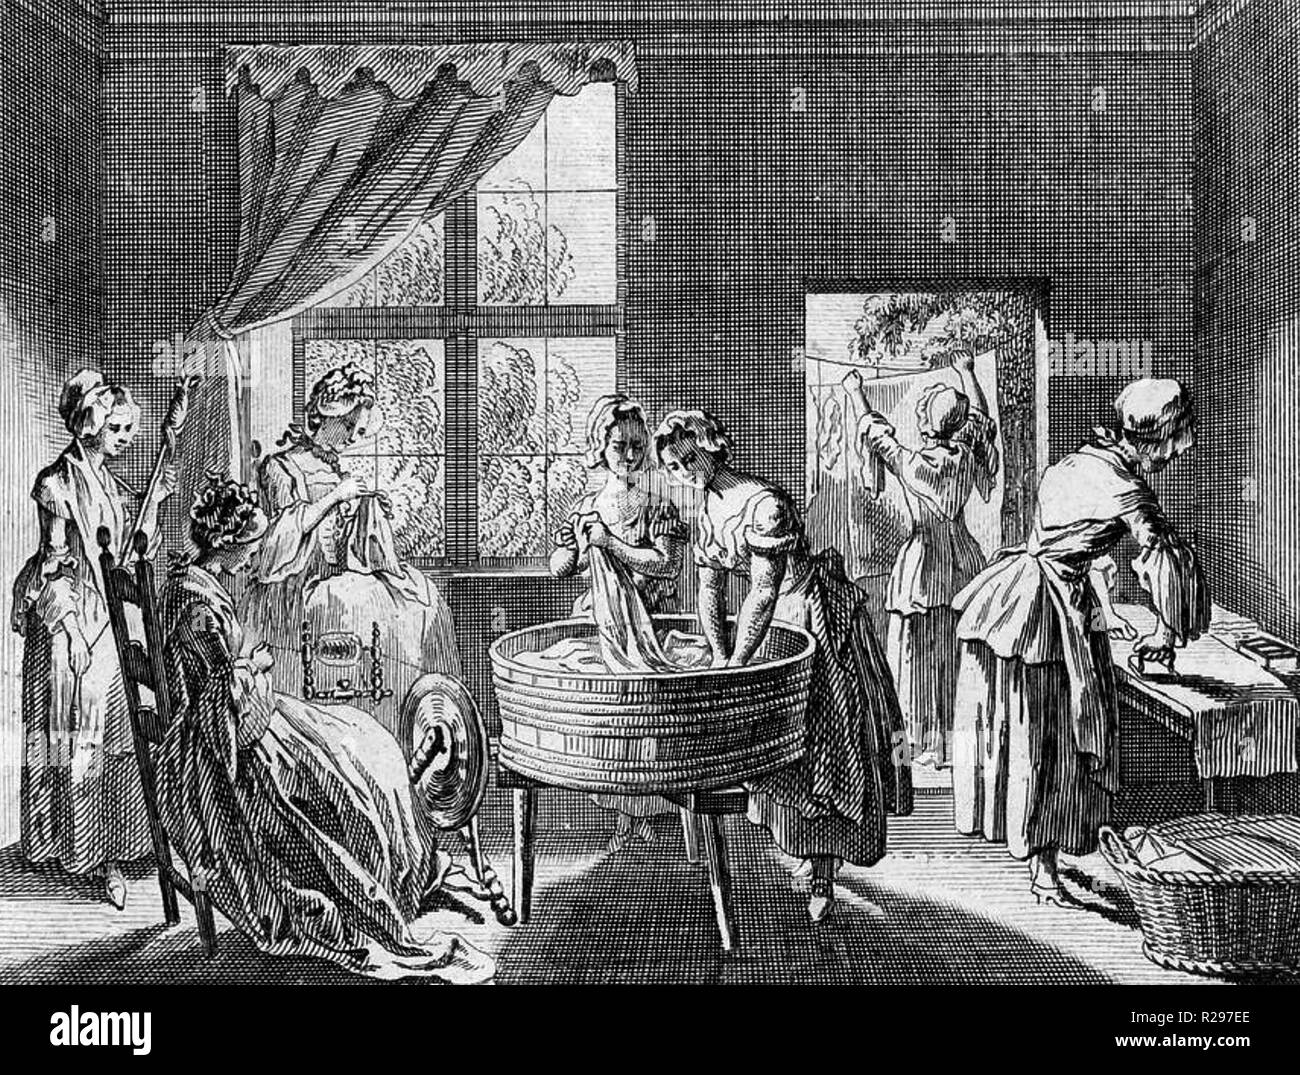 Ménage fonctionnaires dans un 18e siècle anglais accueil faisant des tâches domestiques. Banque D'Images